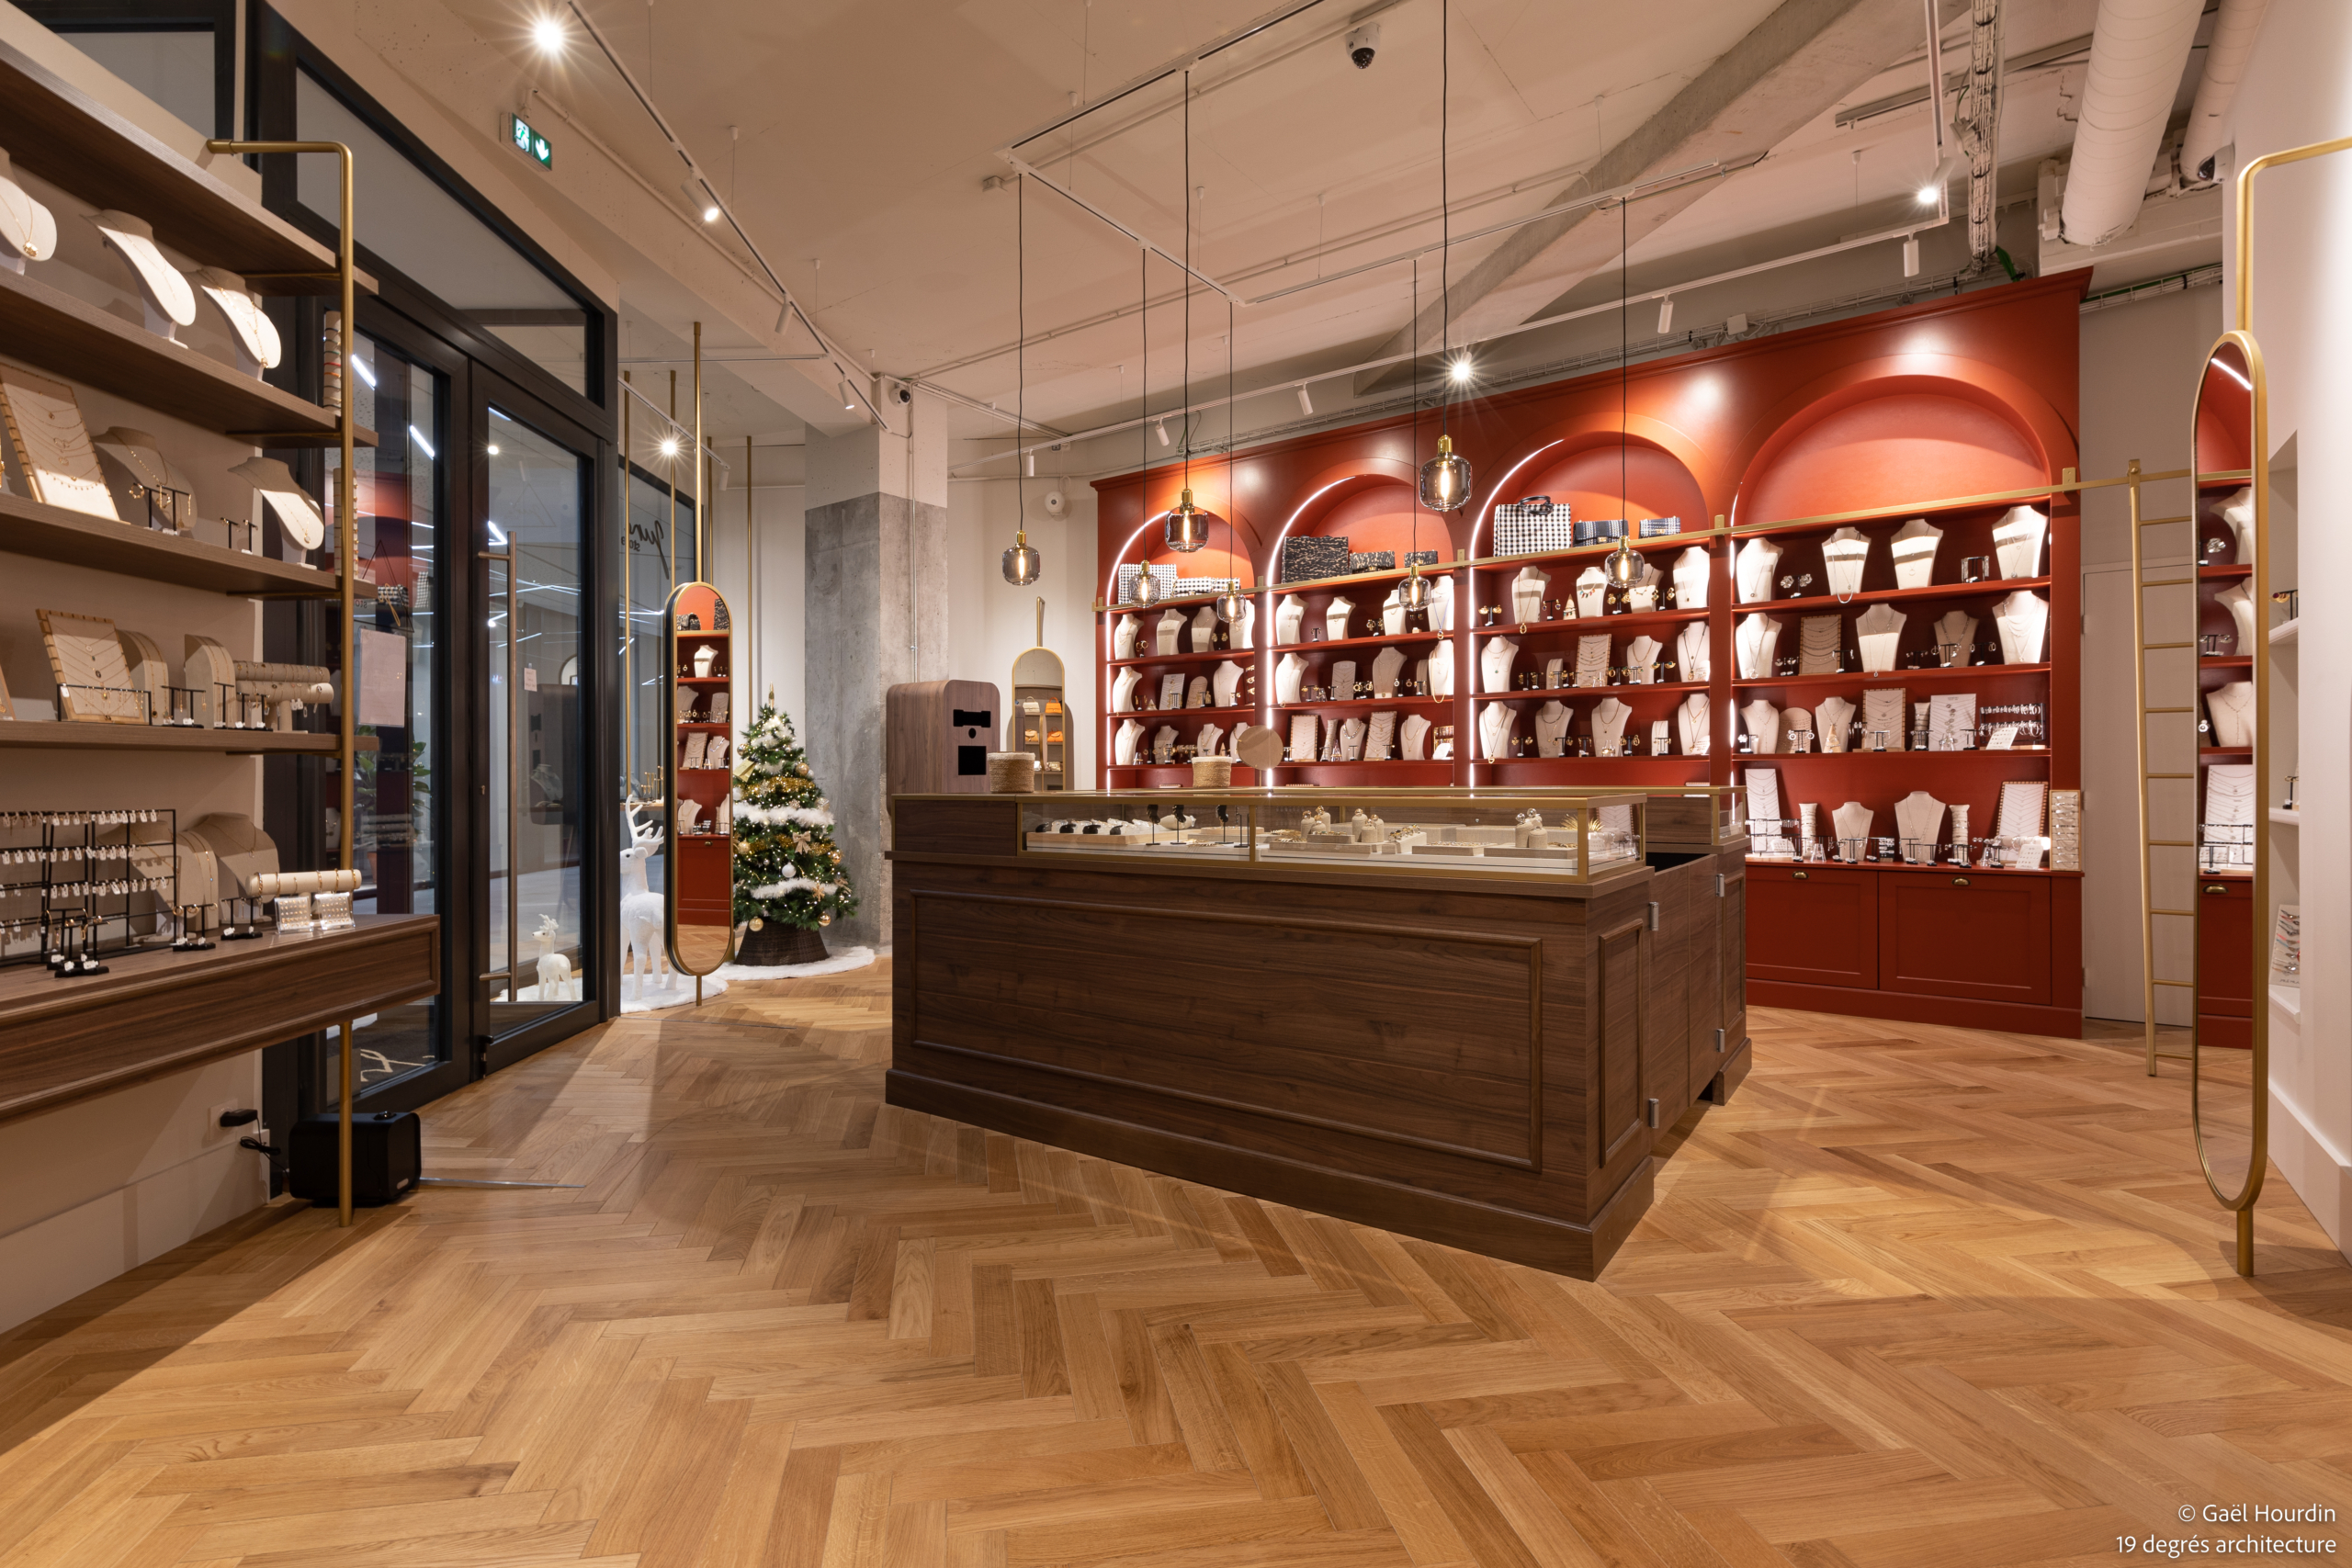 Plan d'ensemble de la boutique avec un ilot central, des étagères à bijoux, luminaires suspendus, devanture de magasin et bibliothèque à bijoux.